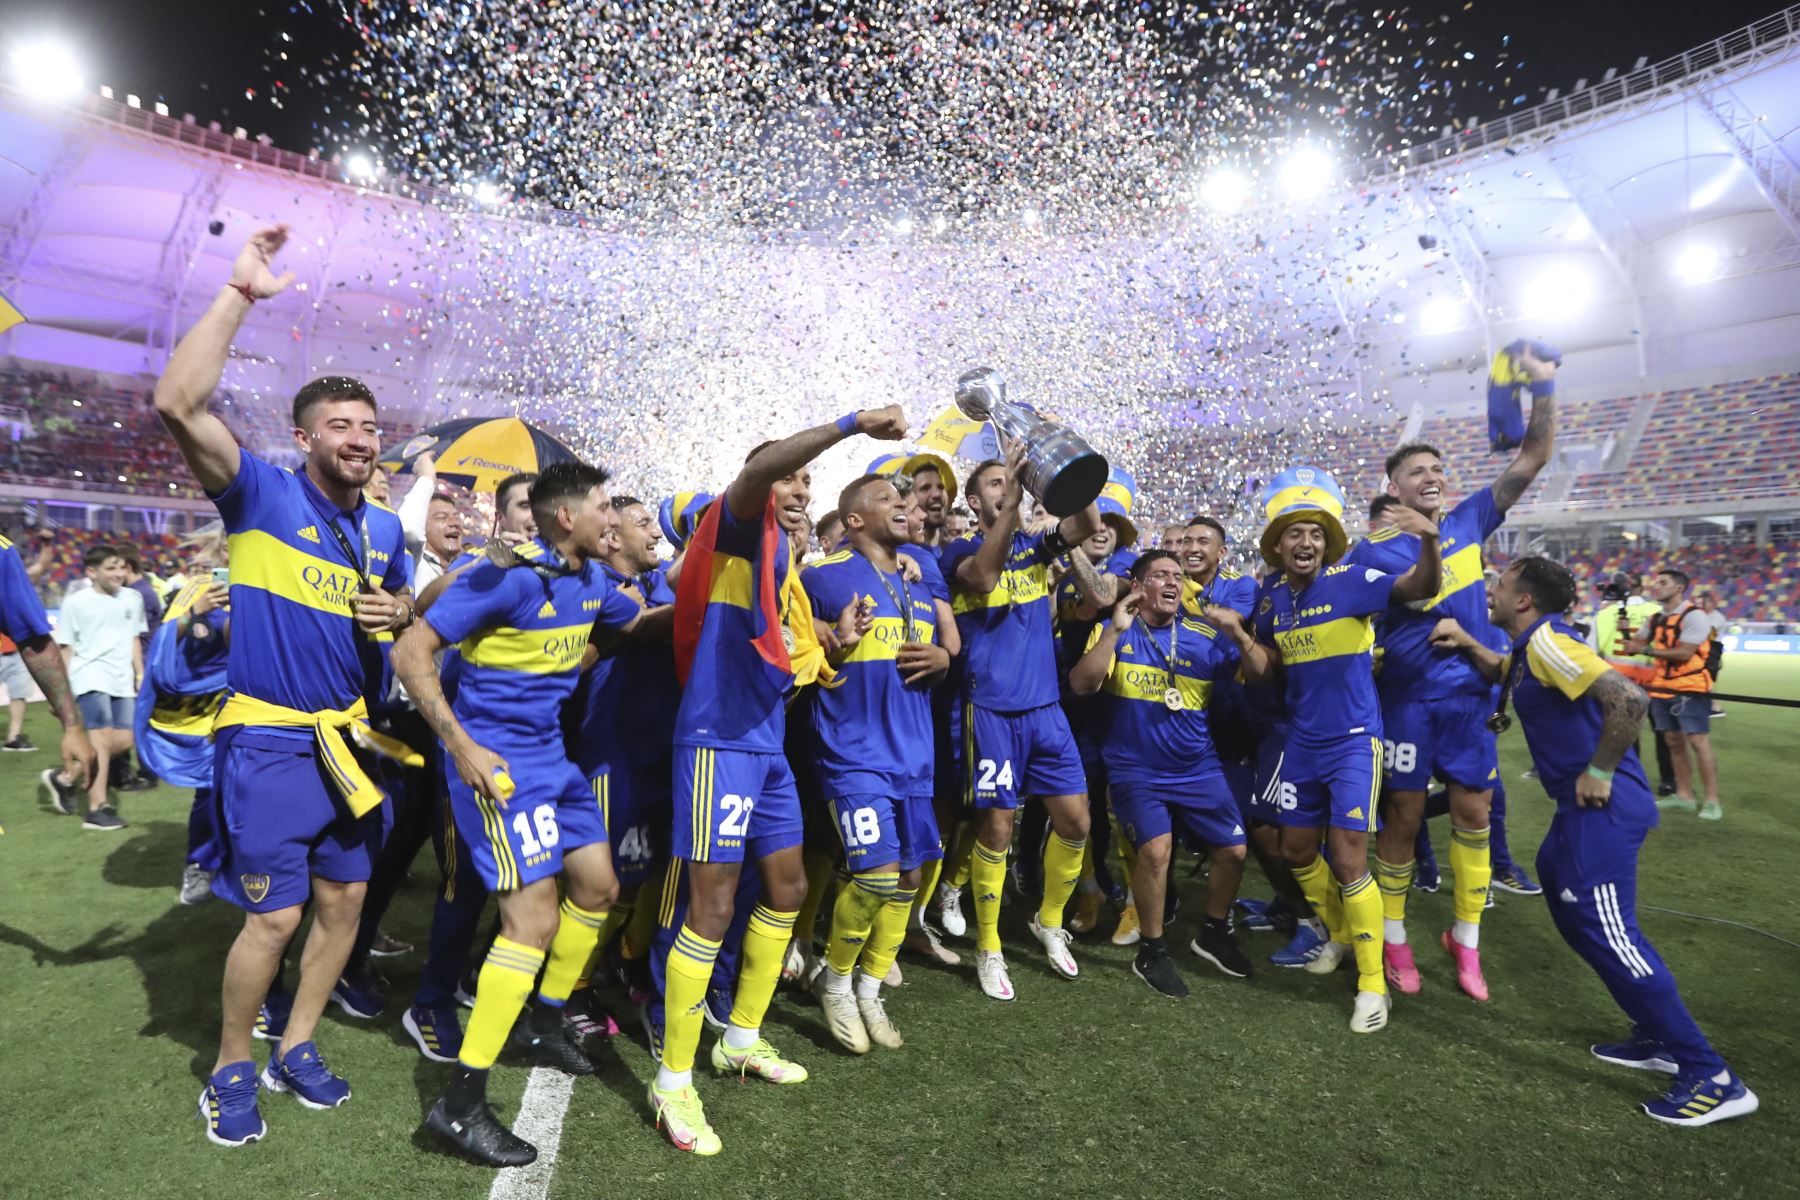 Los jugadores de Boca Juniors celebran con la copa tras ganar la final de la Copa Argentina de fútbol contra Talleres de Córdoba en el Estadio Estadio Único Madre de Ciudades en Santiago del Estero, Argentina, el 8 de diciembre de 2021.
Foto: AFP